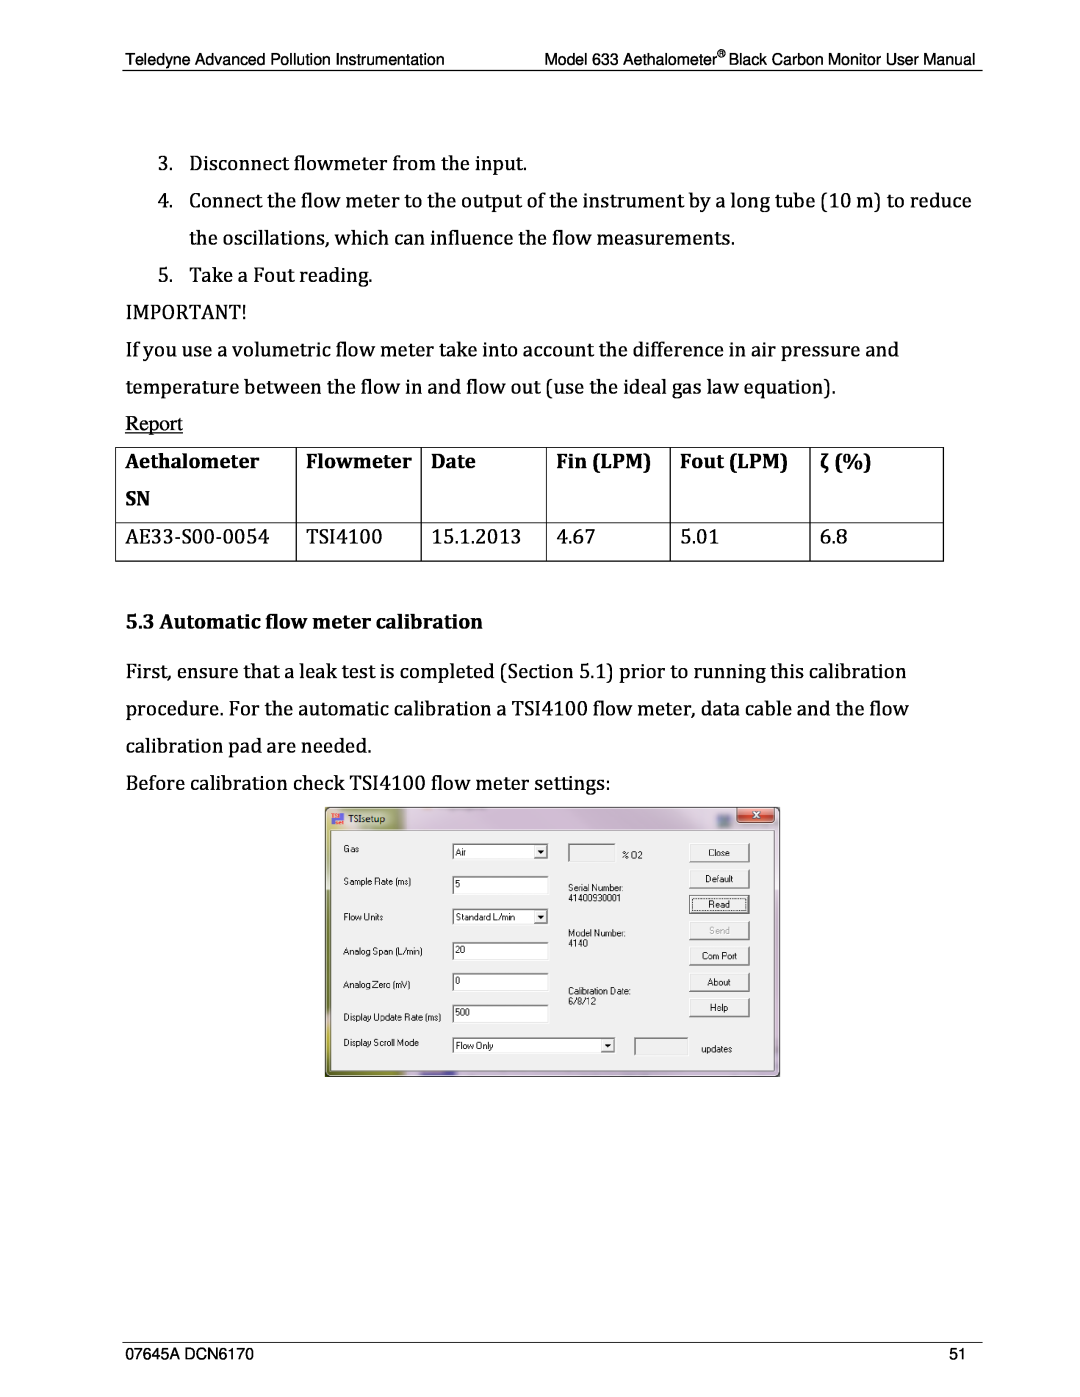 Teledyne 633 user manual Report 